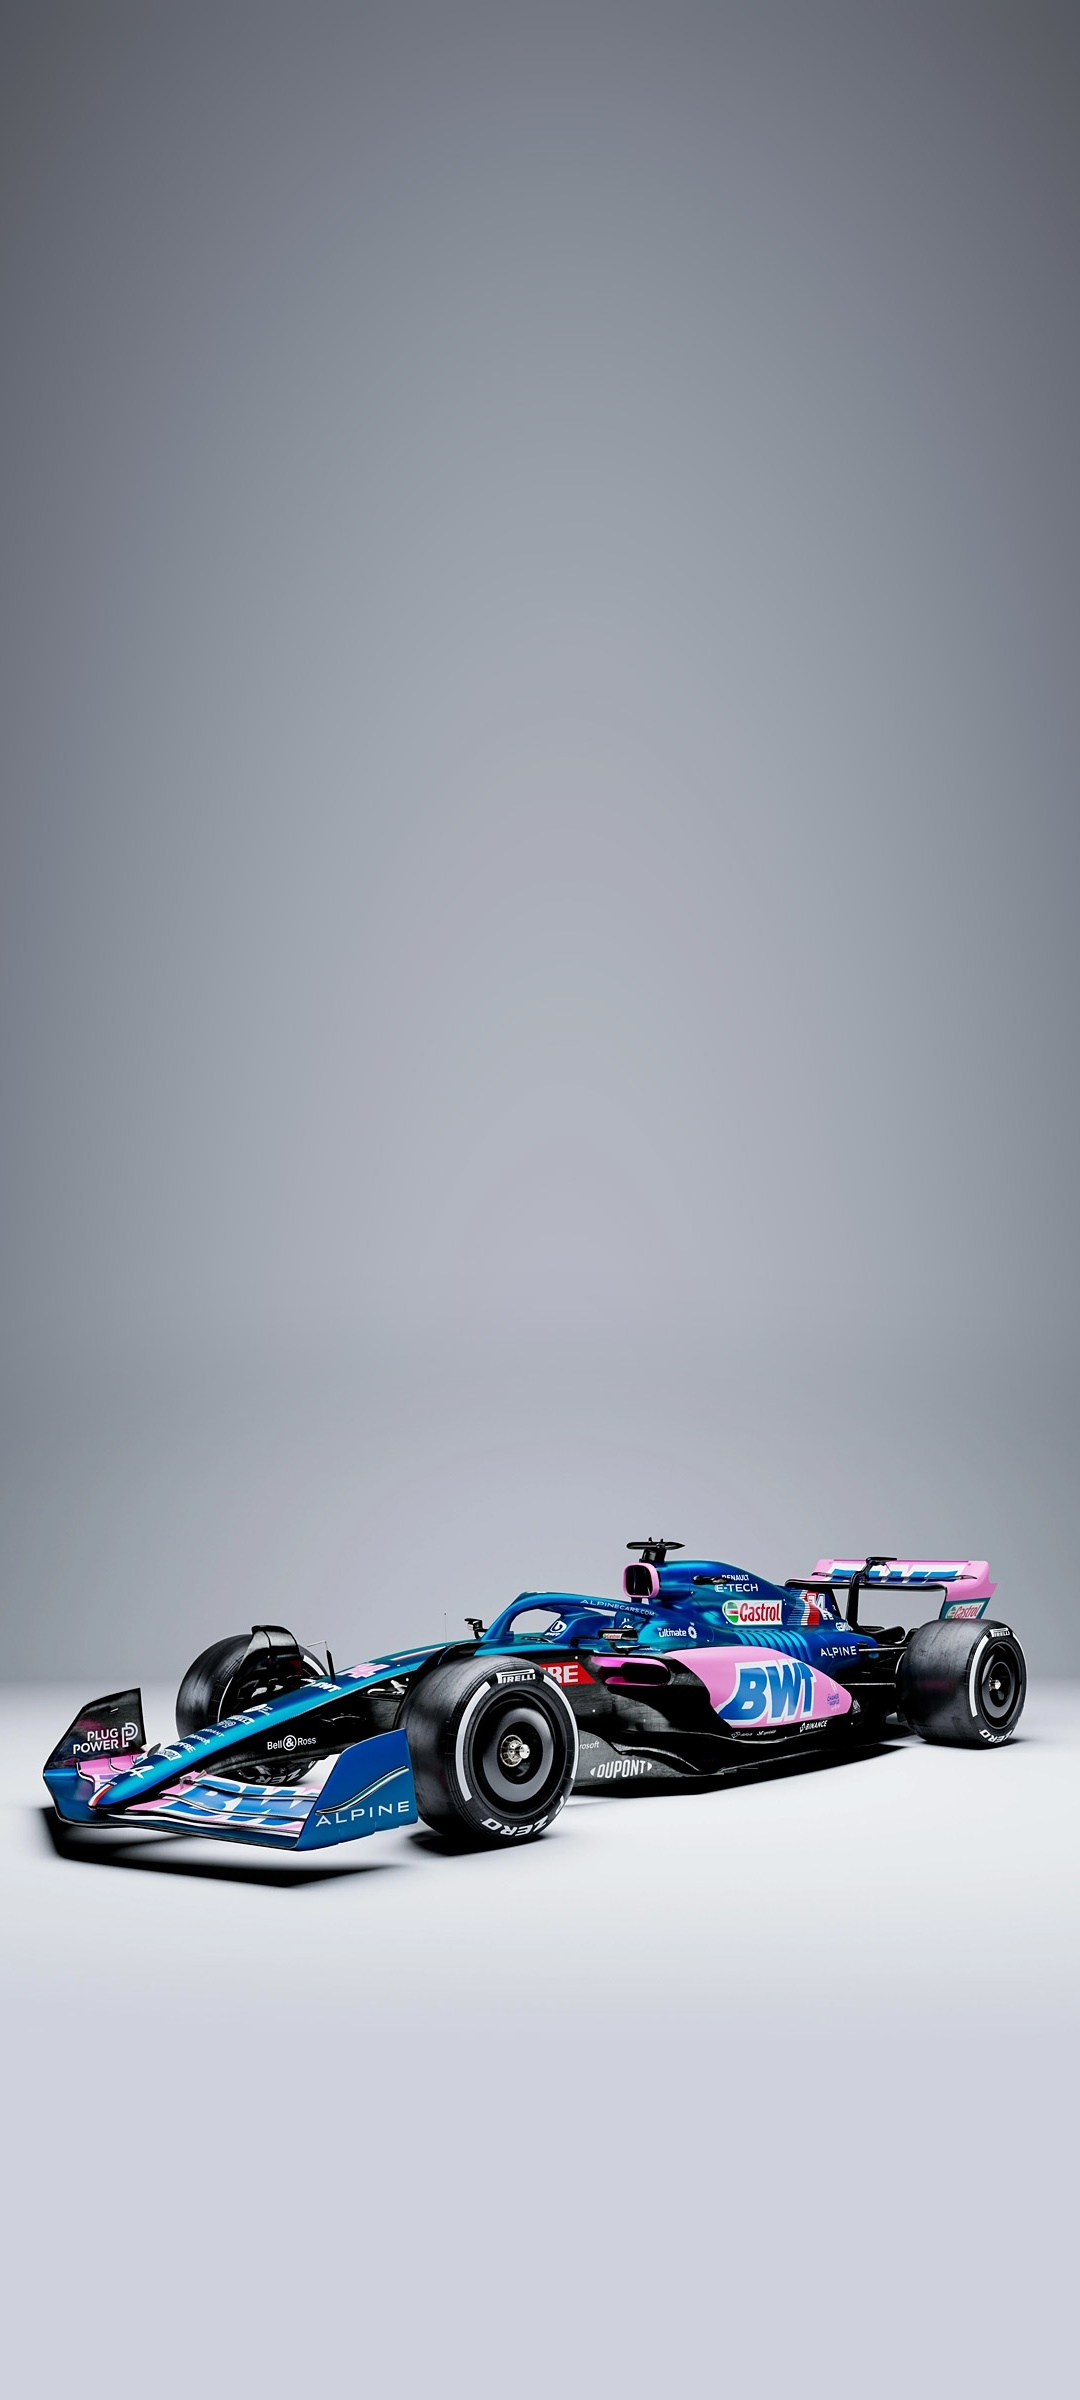 Wallpaper / Sports F1 Phone Wallpaper, Alpine F1 Team, F1 Race Car, 1080x2400 free download